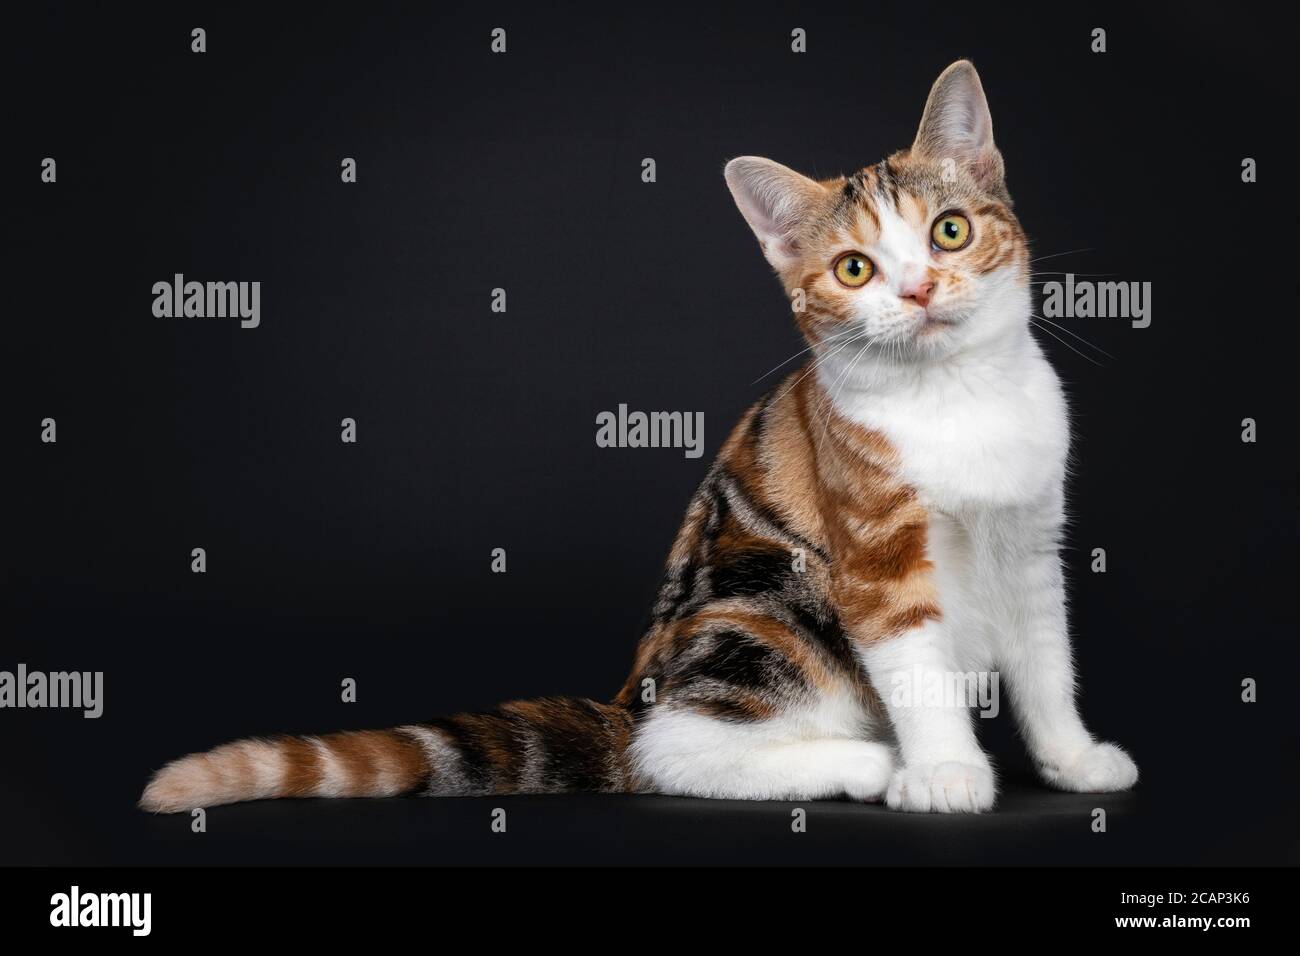 Gattino di gatto americano grazioso di Shorthair con il modello stupefacente, sedendo i sensi laterali. Guardando direttamente la fotocamera con gli occhi gialli. Isolato su sfondo nero Foto Stock